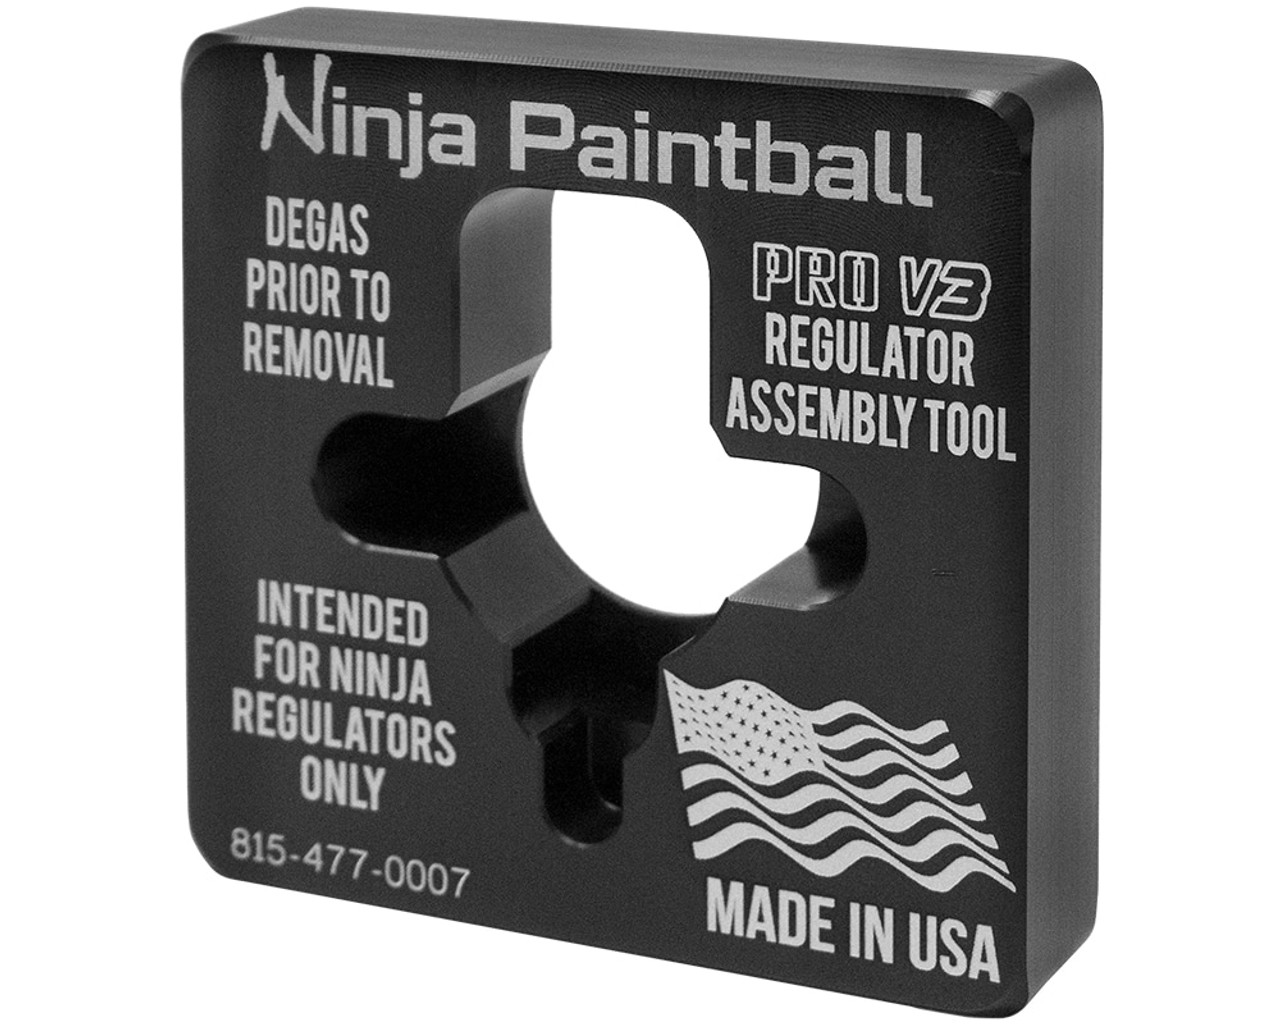 Ninja Tank Regulator Assembly Tool - Pro V3